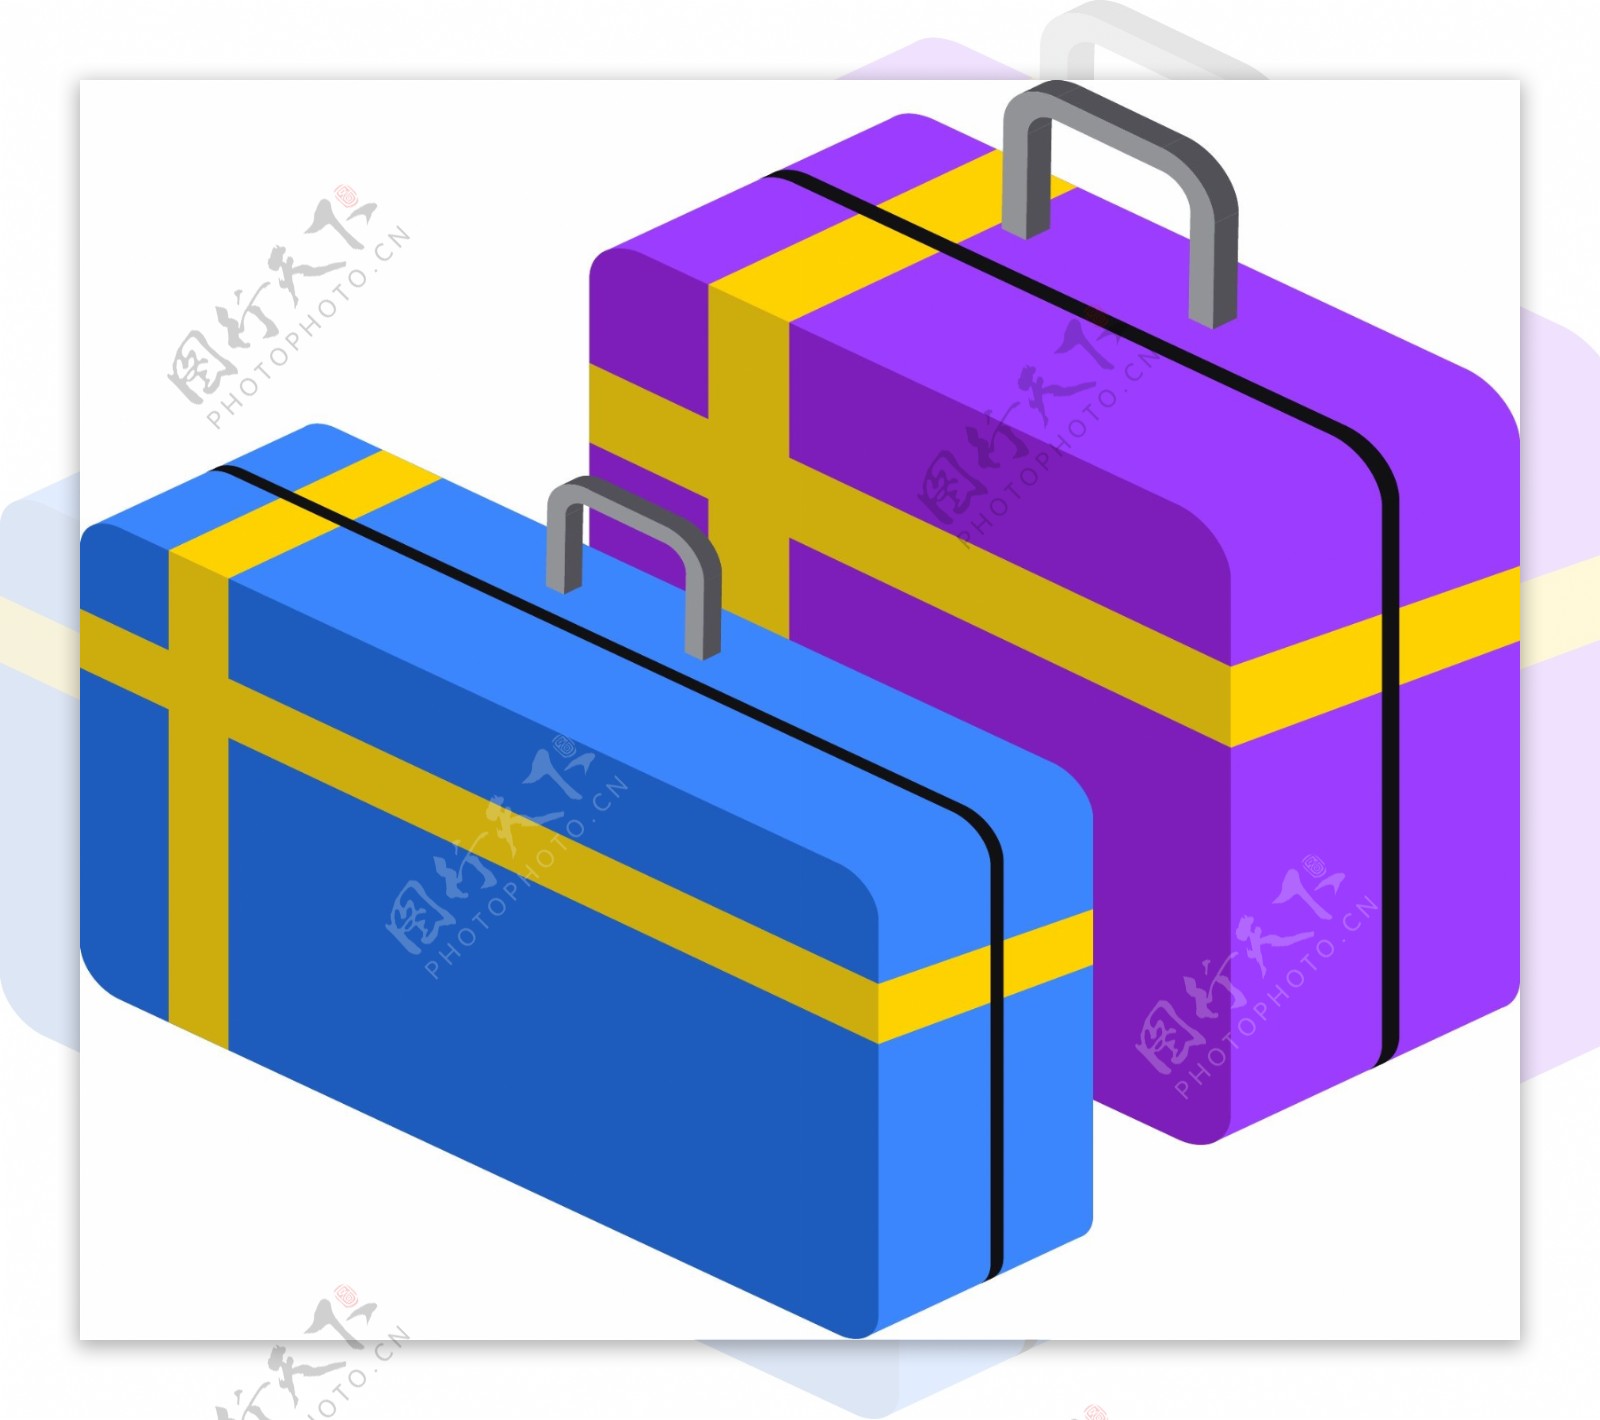 简约紫蓝色行李箱原创元素